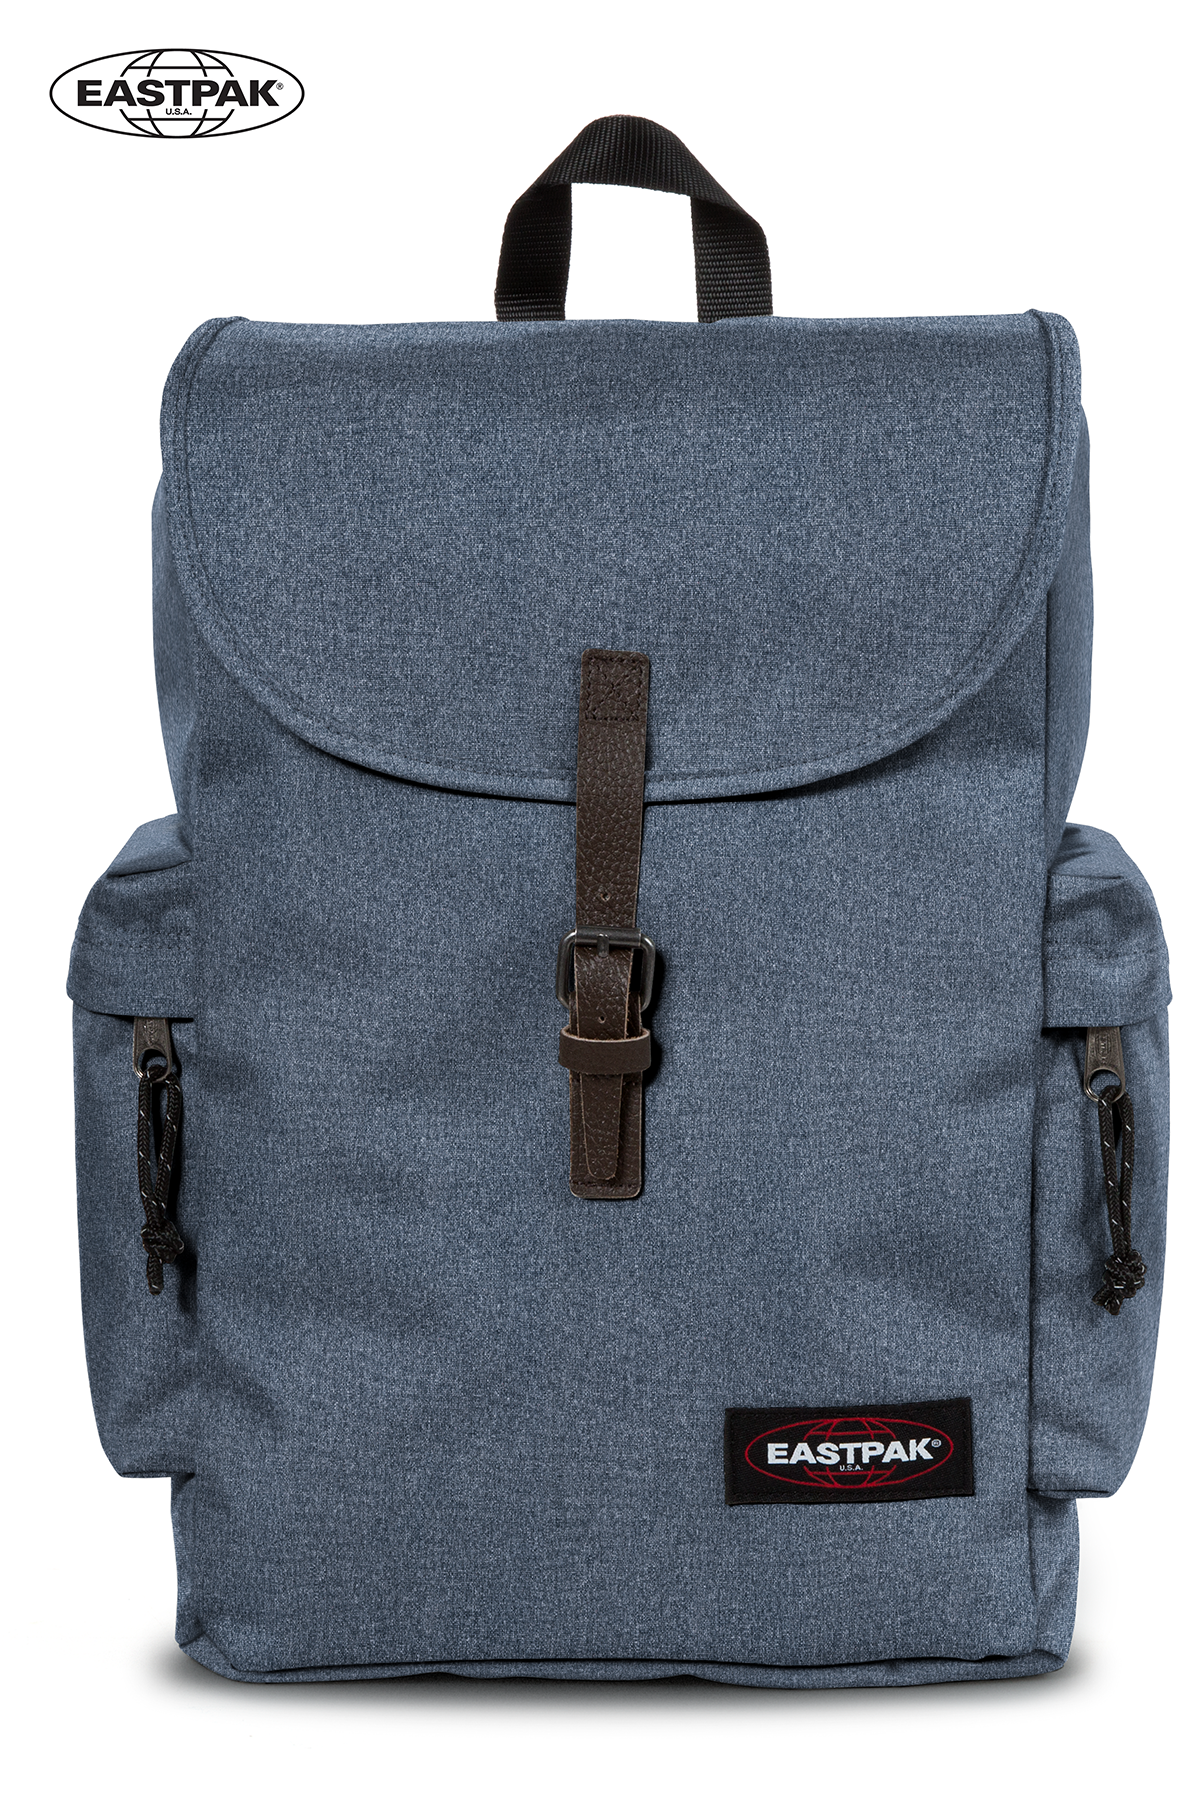 Backpack EASTPAK AUSTIN 18L